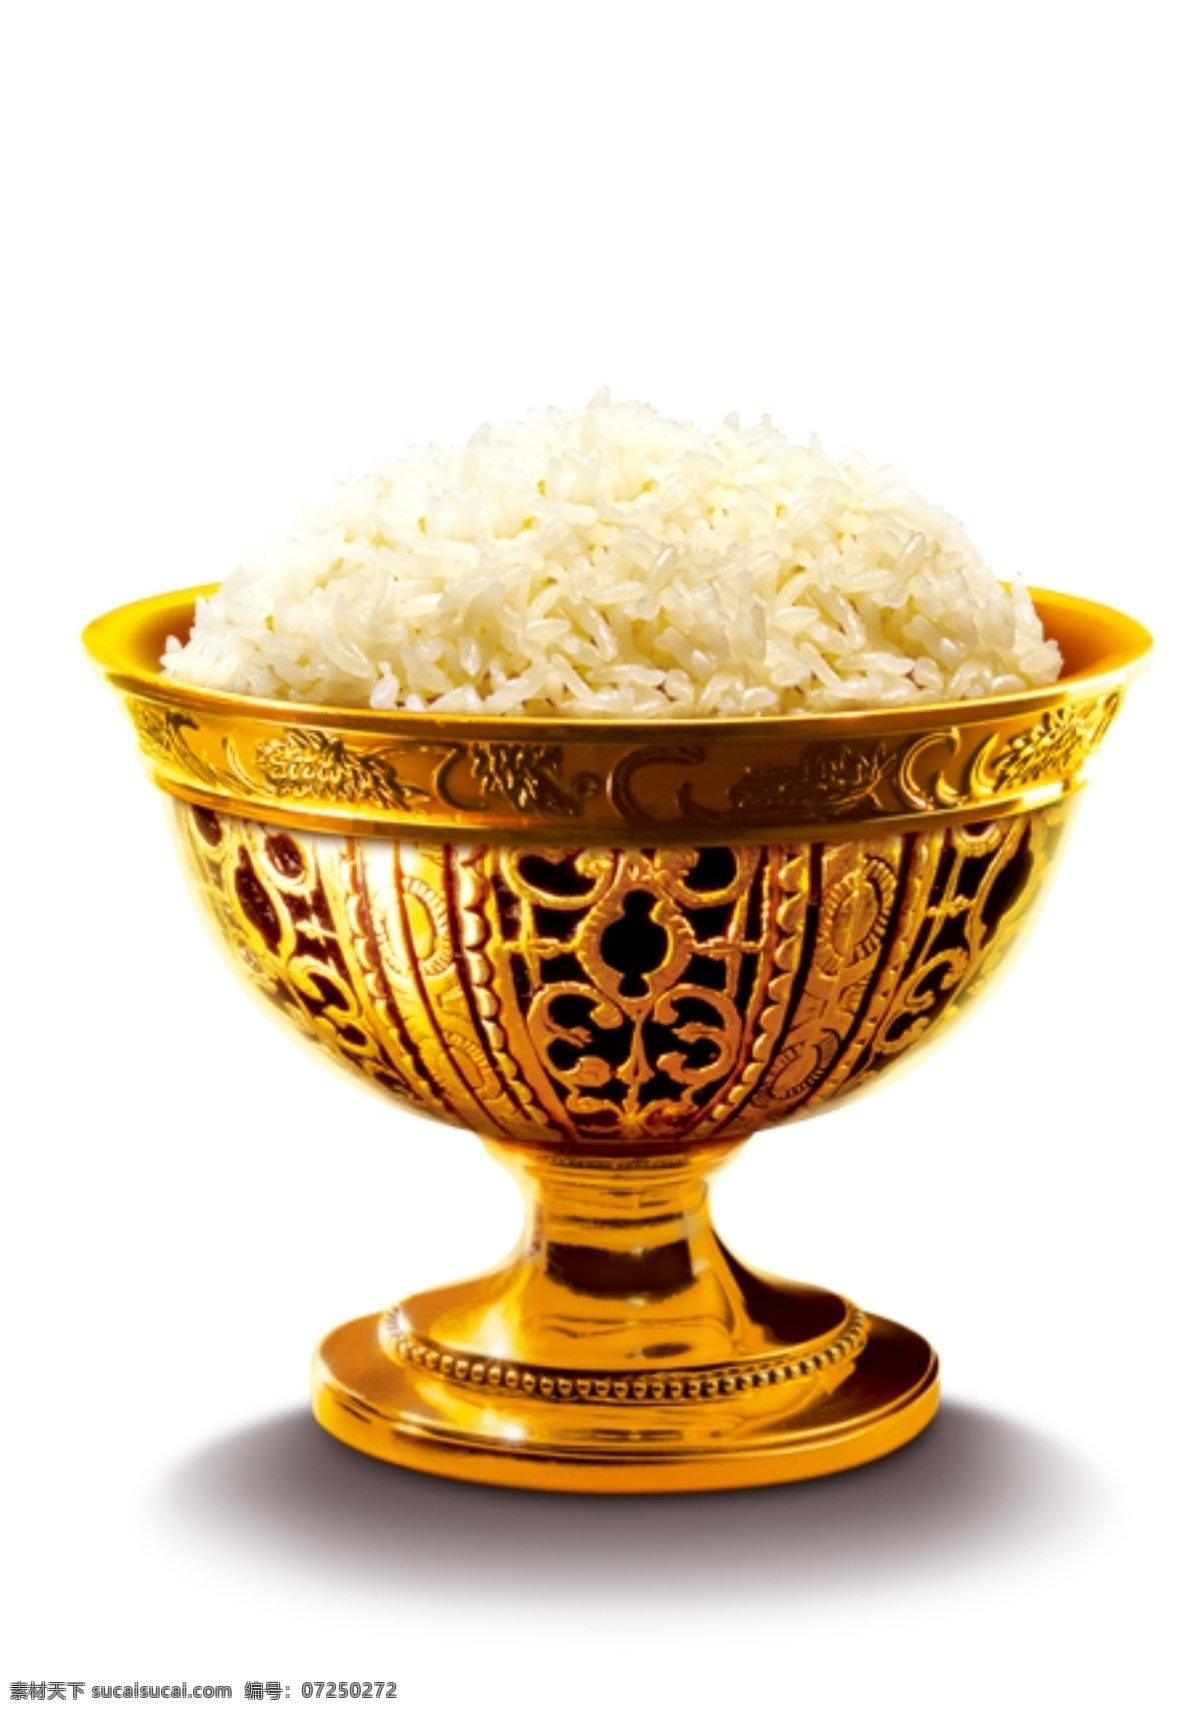 金碗 米饭 金 金银 金碗与米饭 国内广告设计